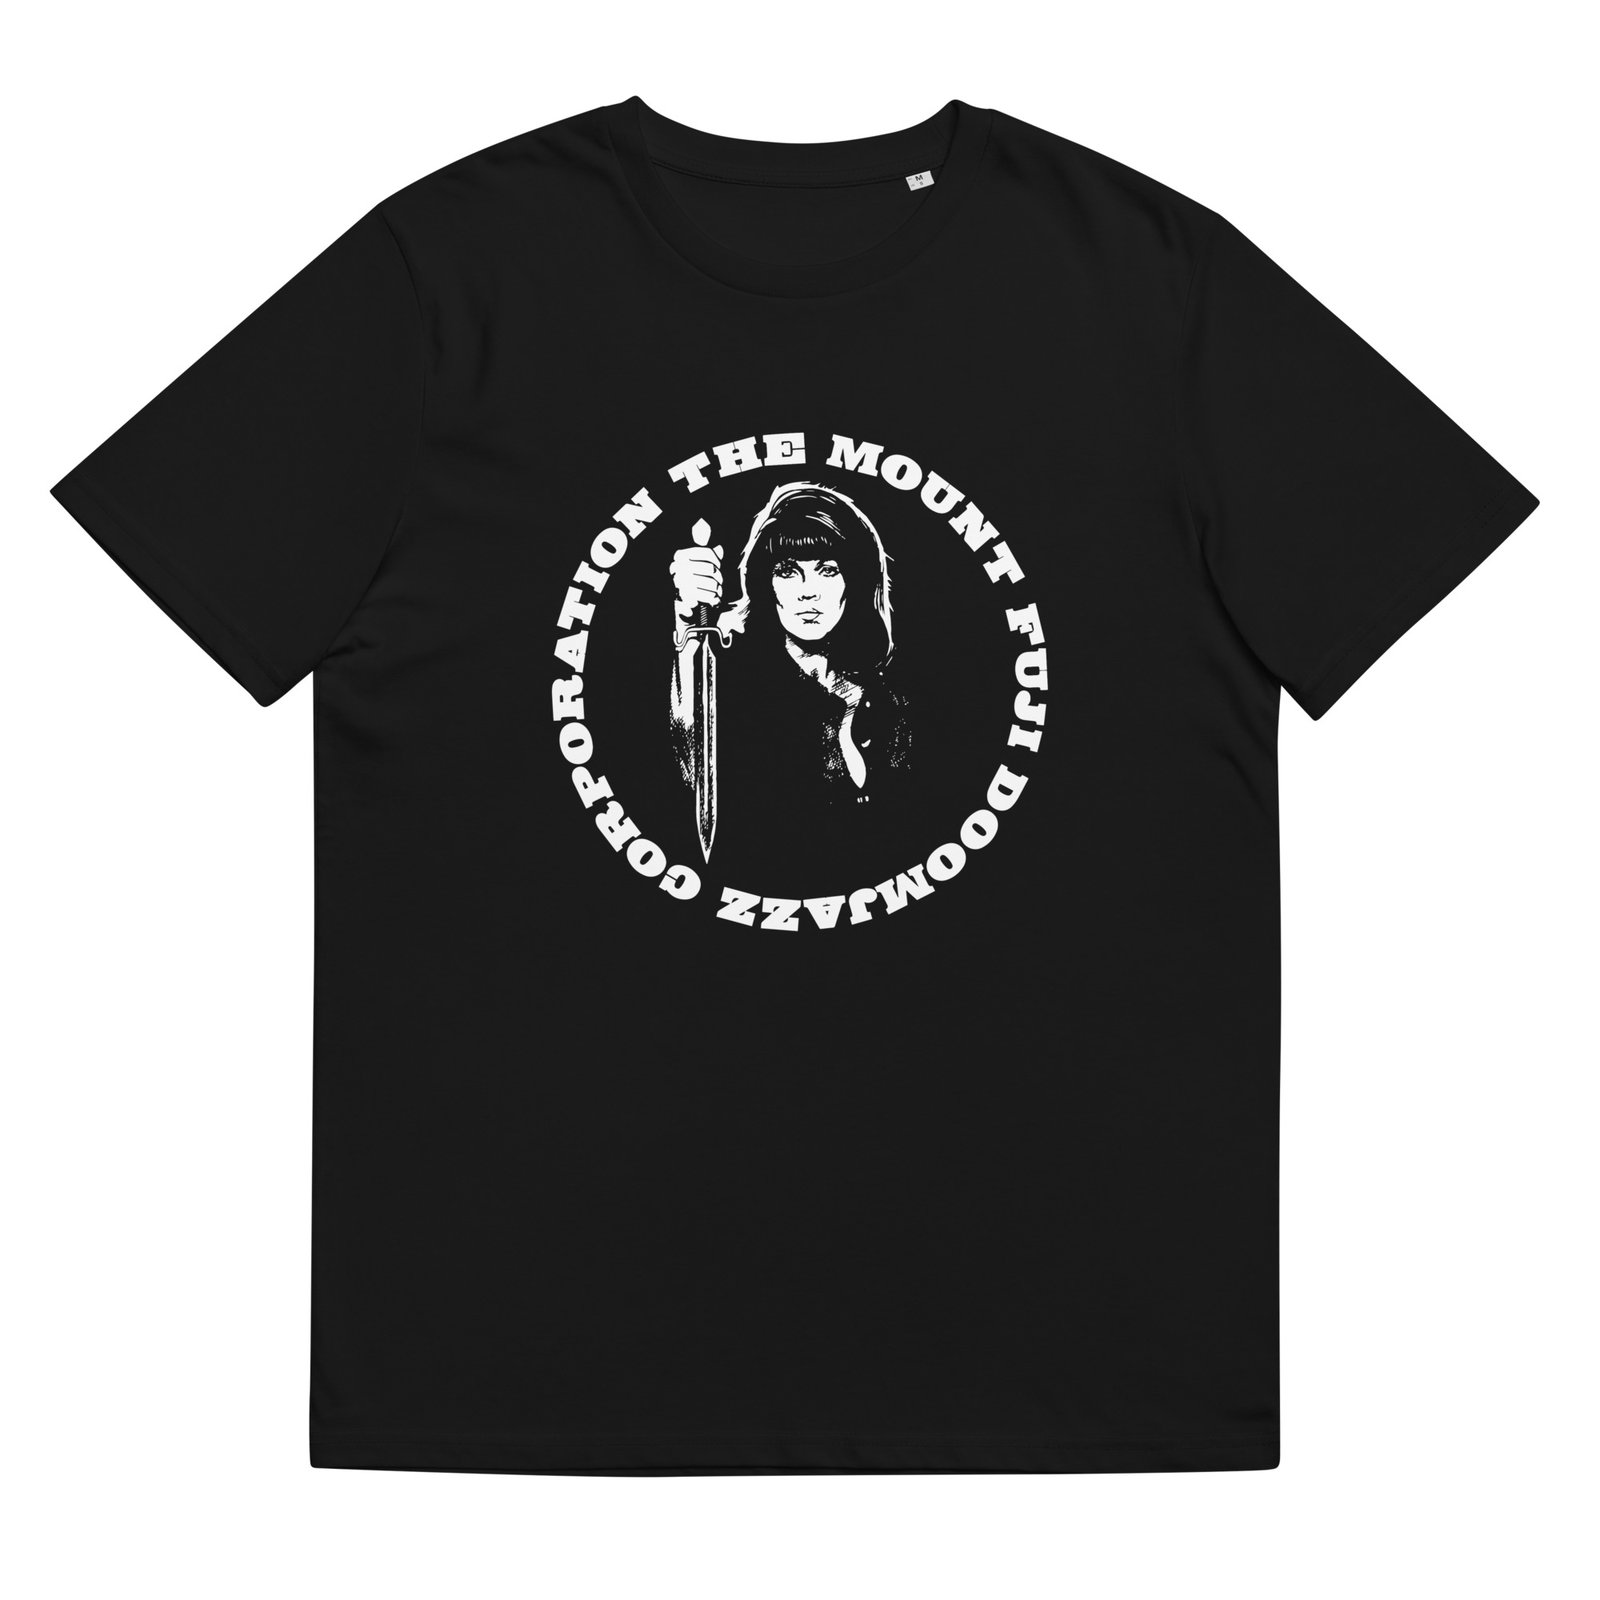 TMFDJC T-shirt / darkjazz